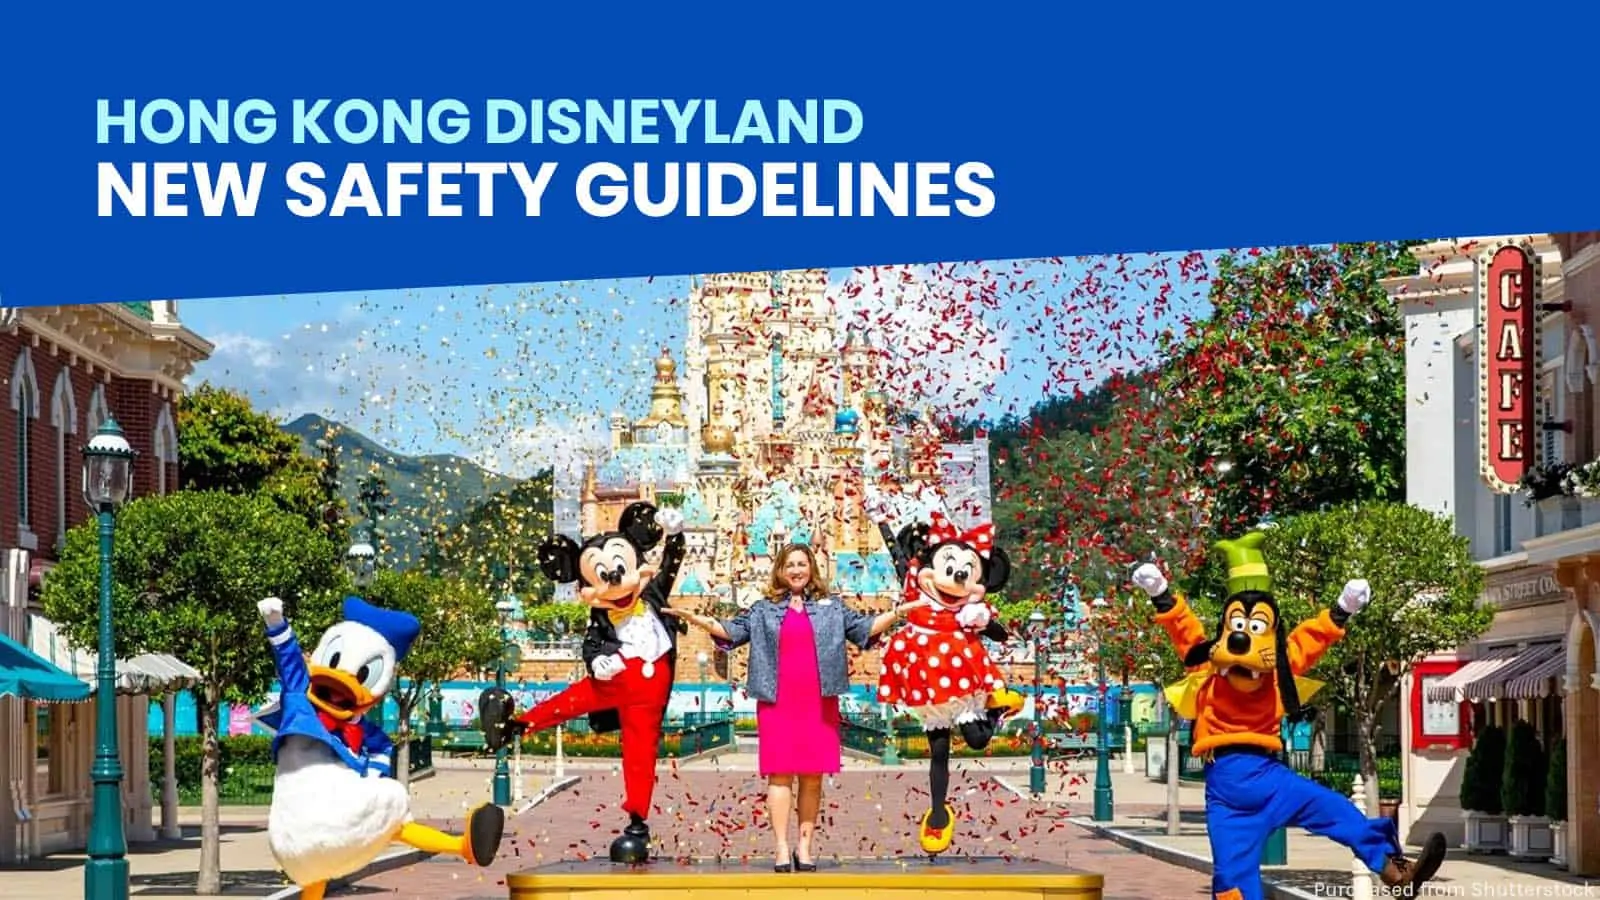 香港迪士尼乐园重新开放:新的健康及安全指引一览表